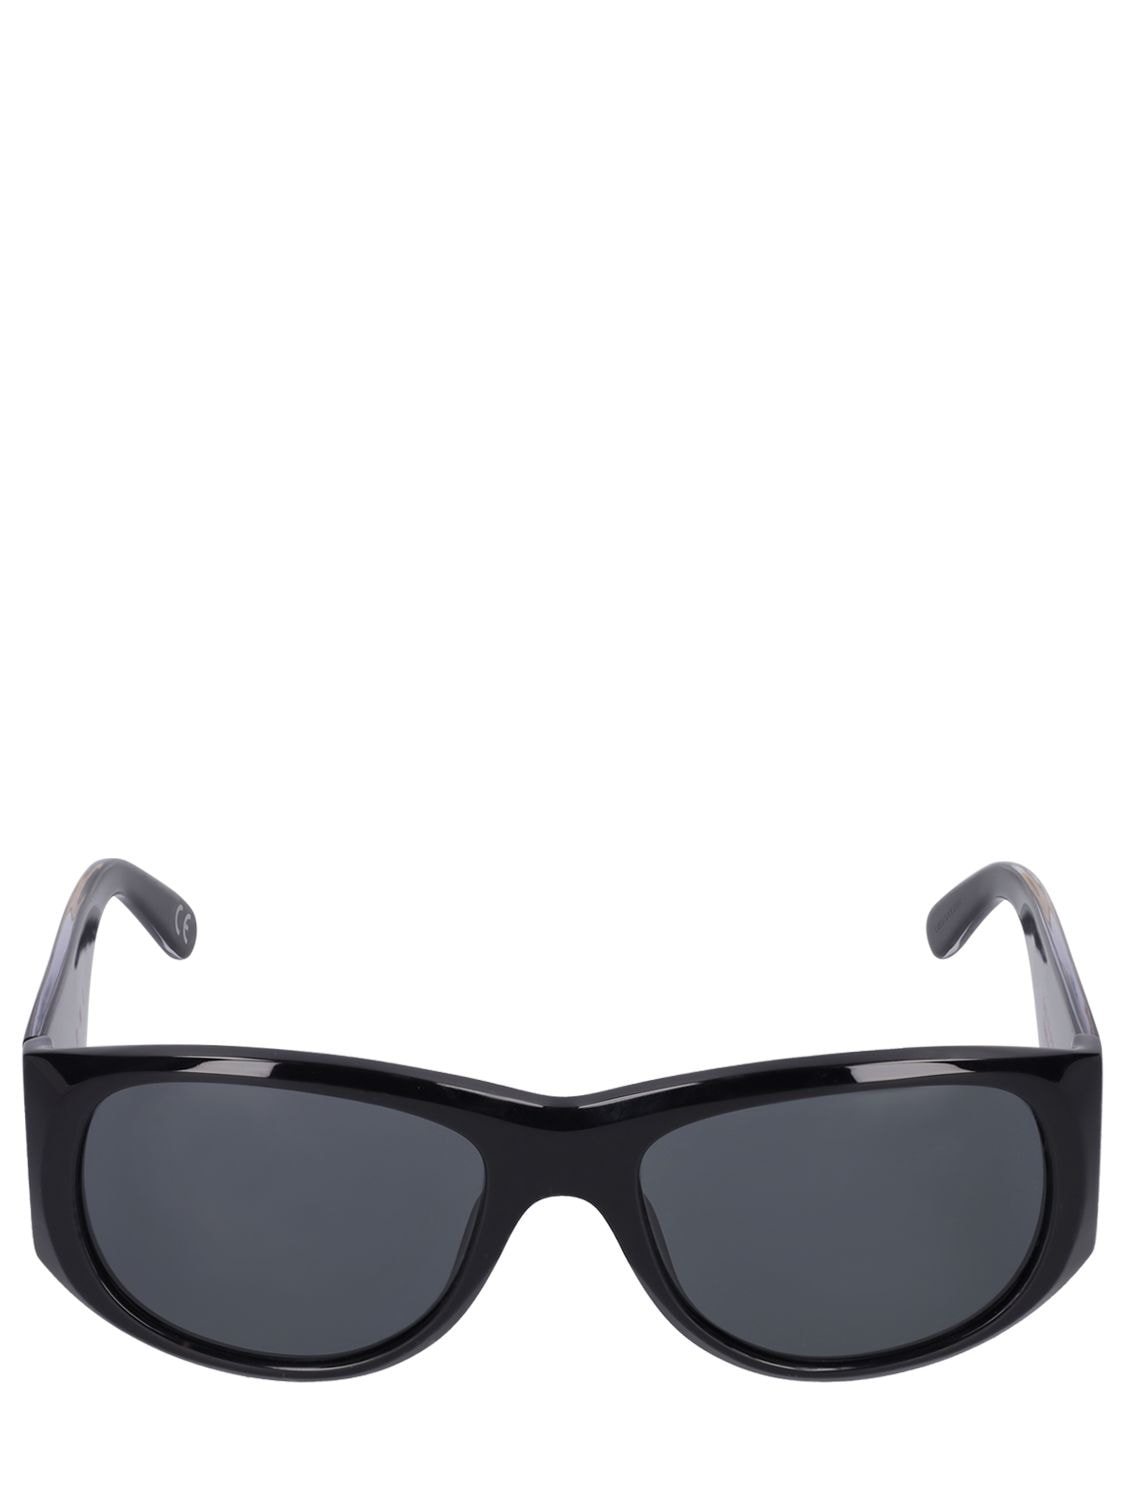 Marni Orinoco River Black Acetate Sunglasses In Black,grey